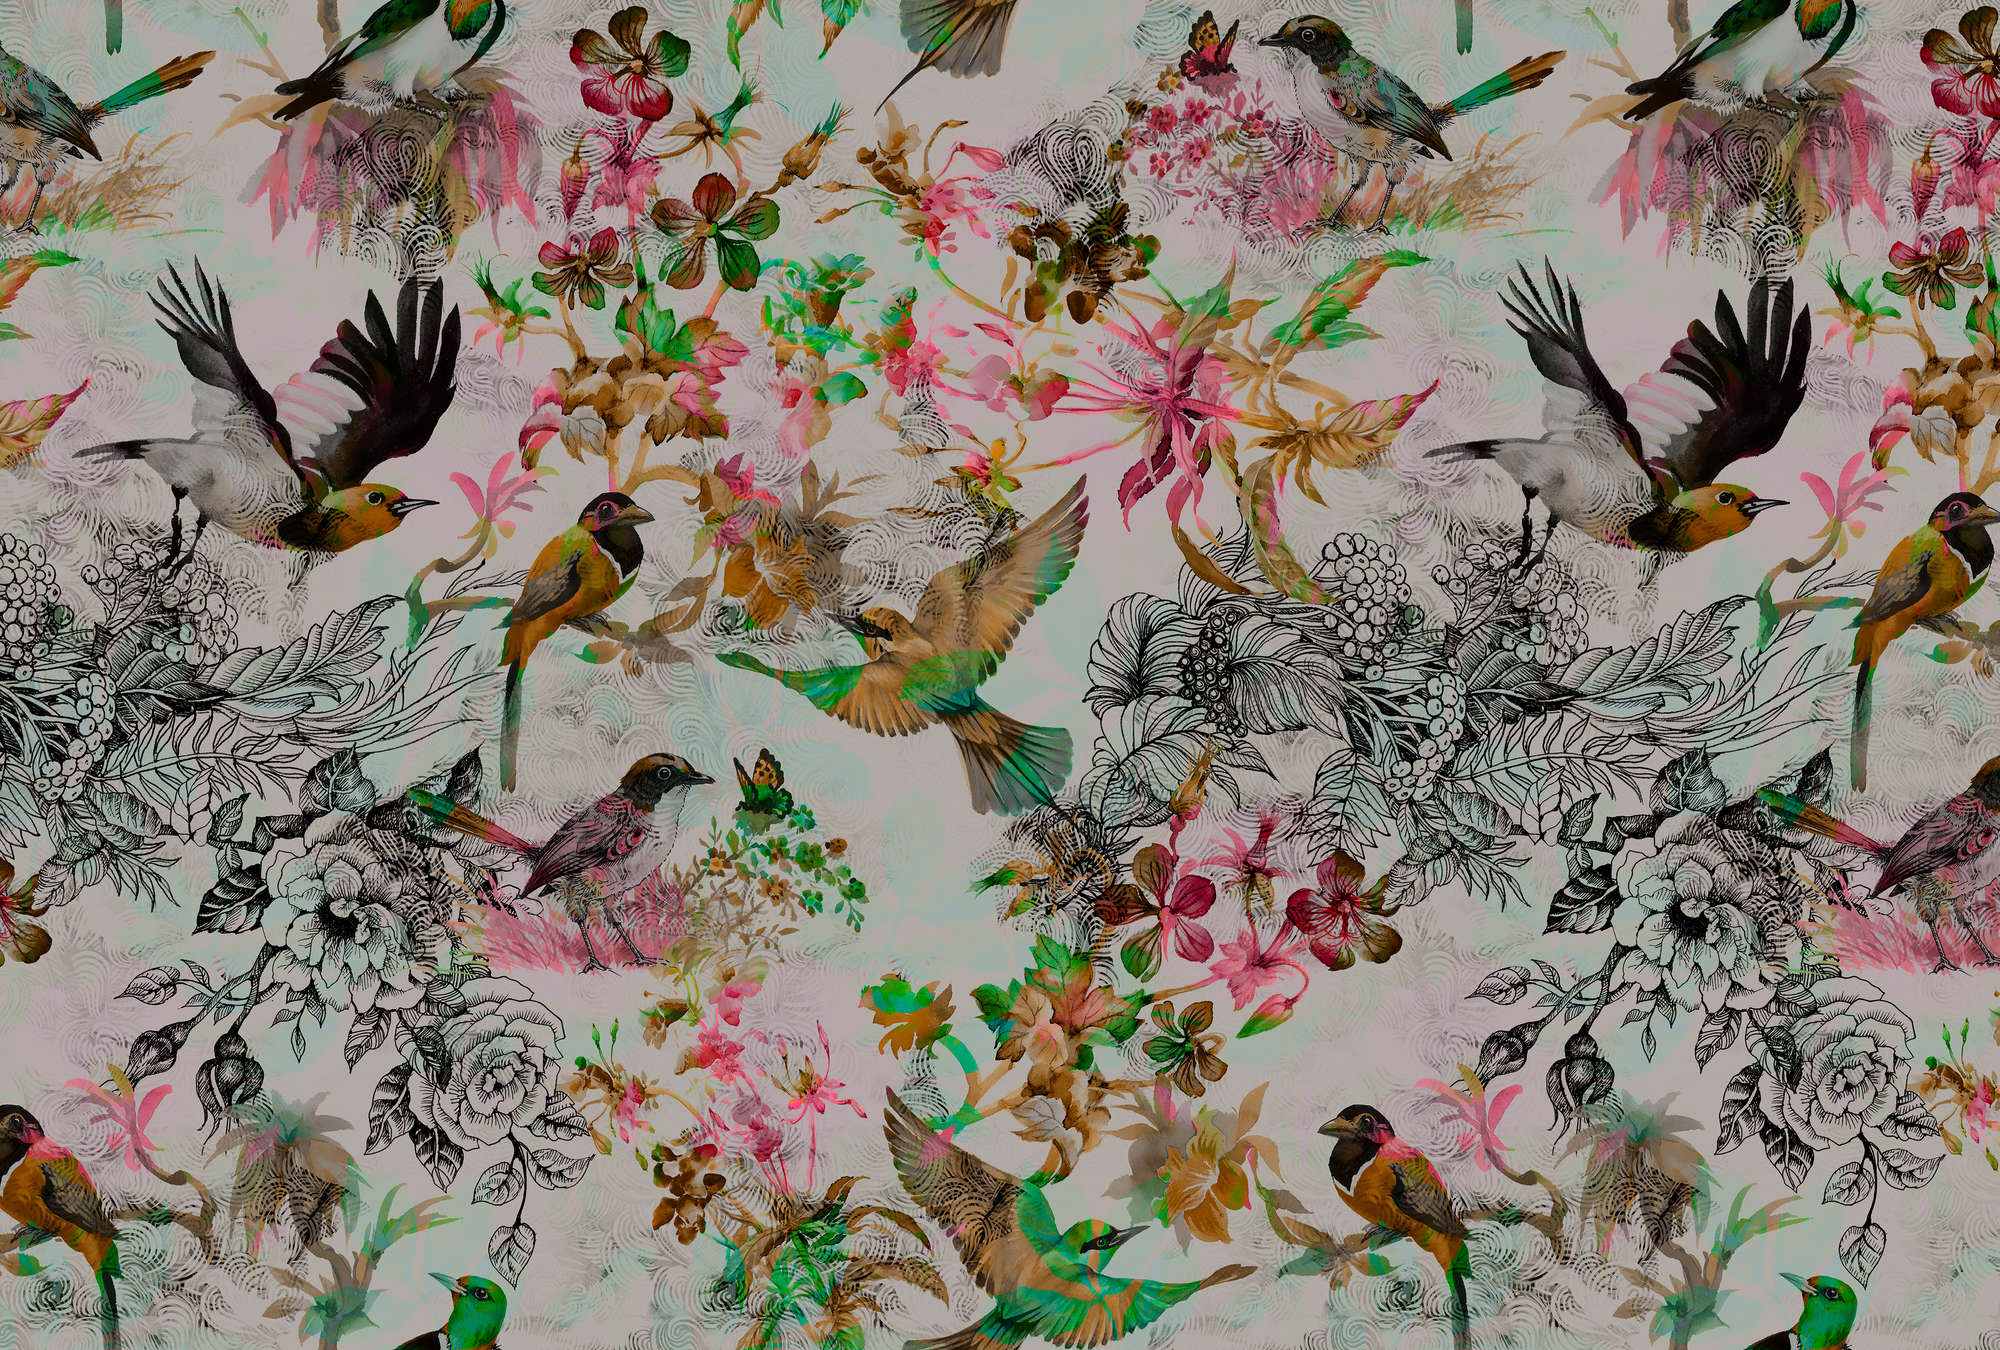             Fototapete Vögel & Blumen im Collage Stil – Grau, Rosa
        